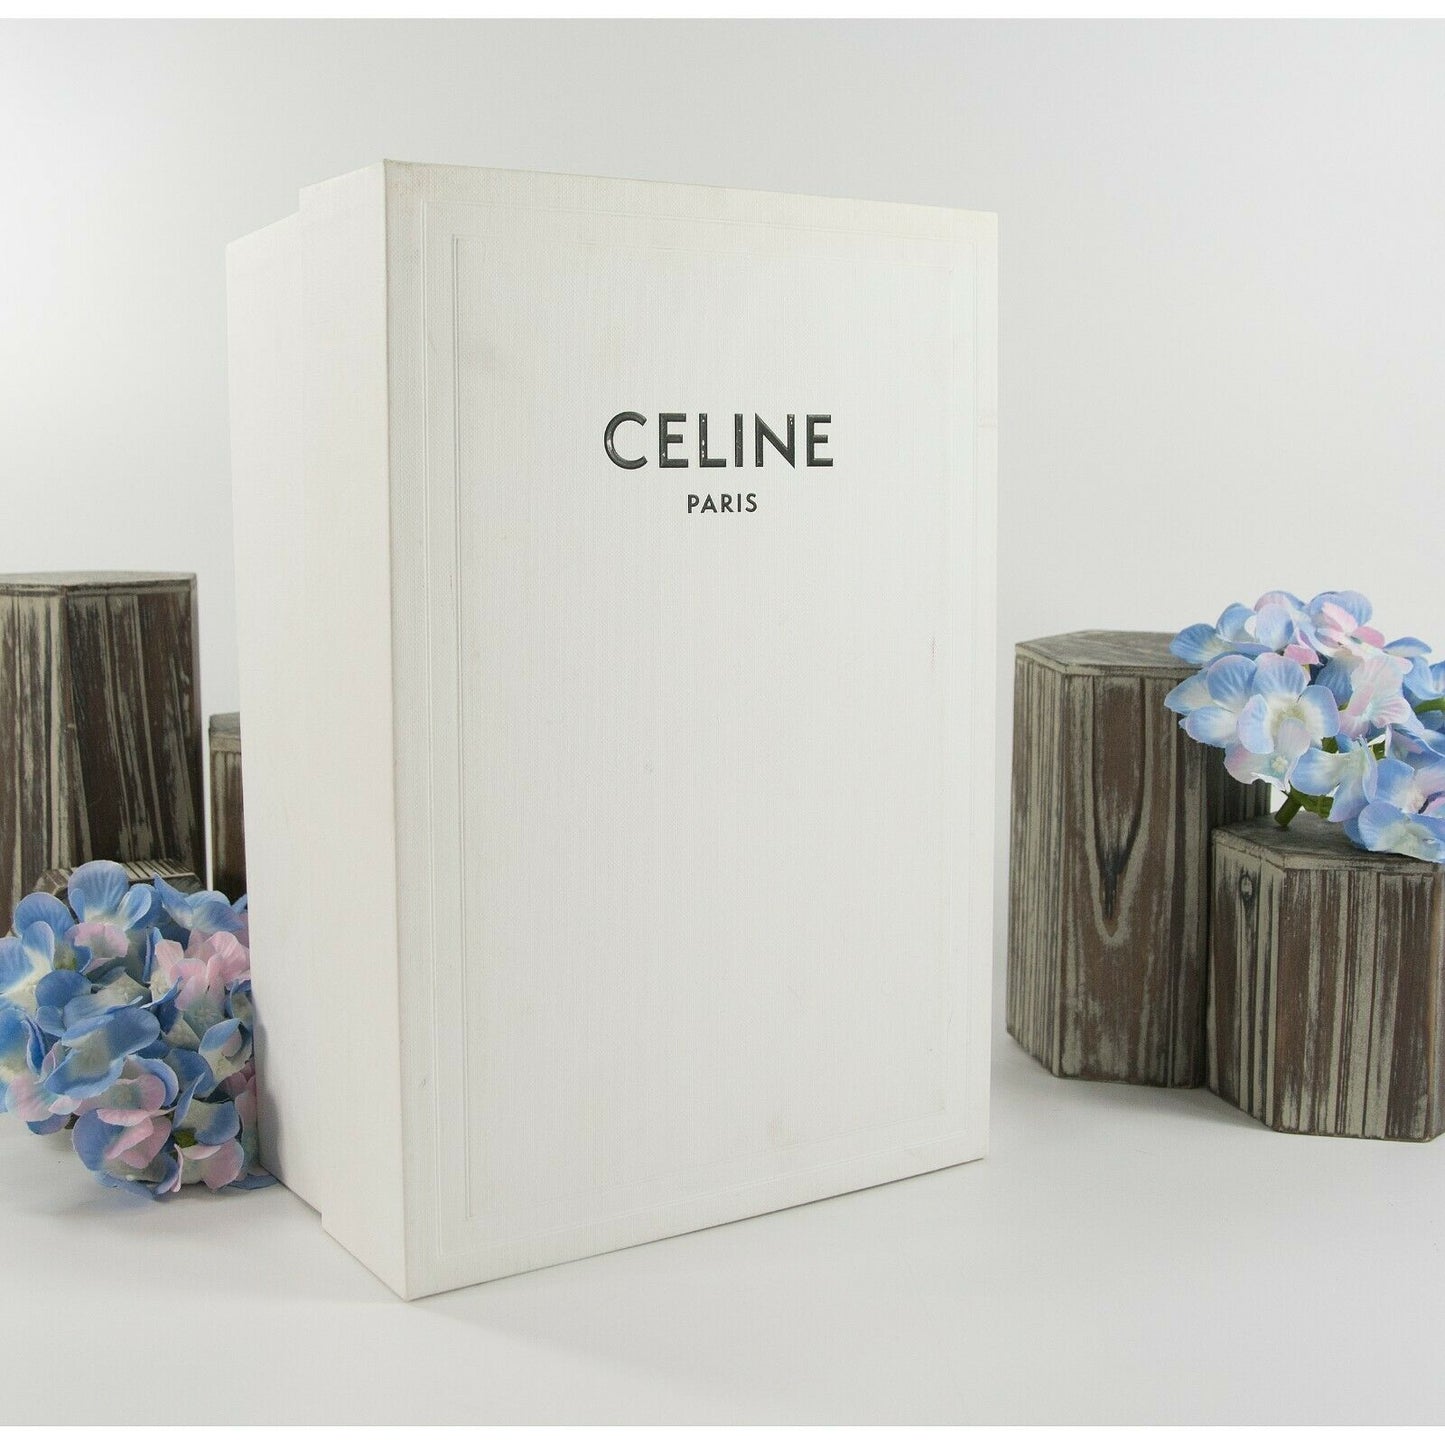 Celine Black White Leather Fan Applique Triangle Heels Size 37 7 NIB